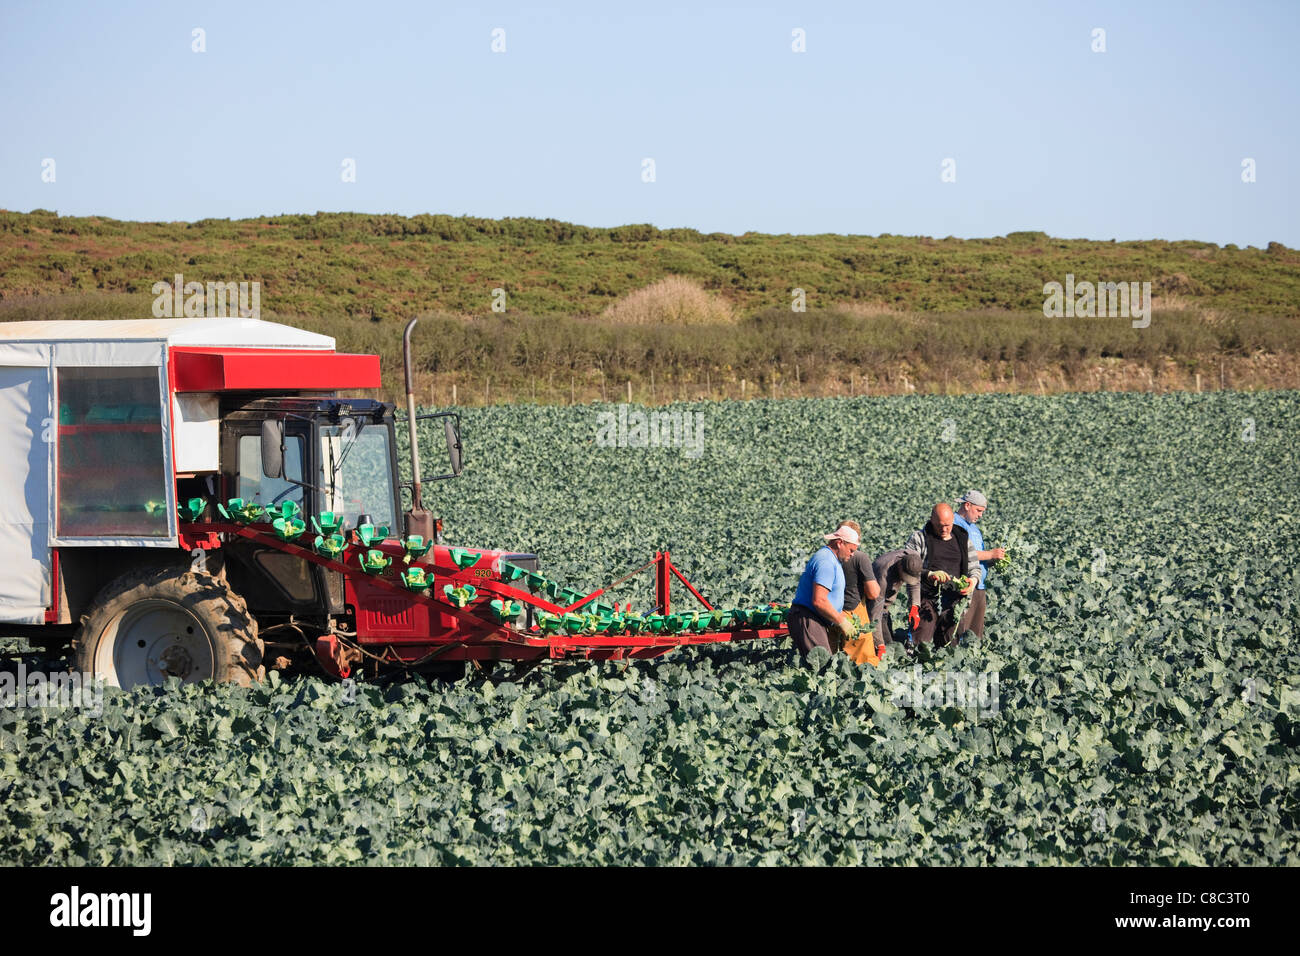 Landarbeiter Ernte Brokkoli in einem Feld mit einem Förderband arm Sie laden auf einen Traktor und Anhänger. England Großbritannien Großbritannien Stockfoto